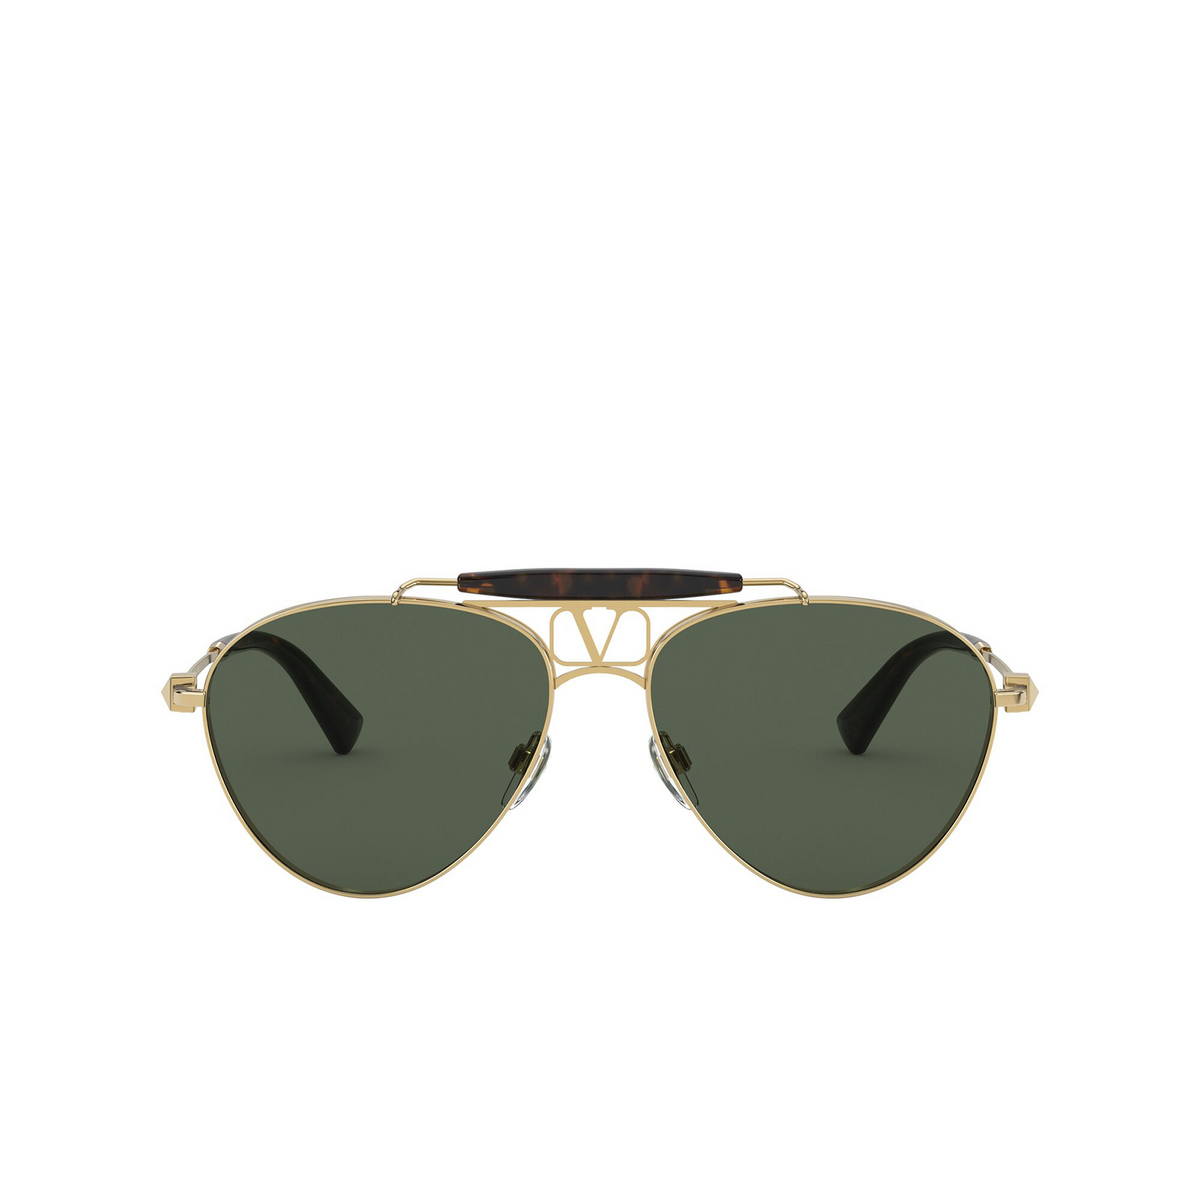 Valentino® Aviator Sunglasses: VA2039 color Gold 300271 - front view.